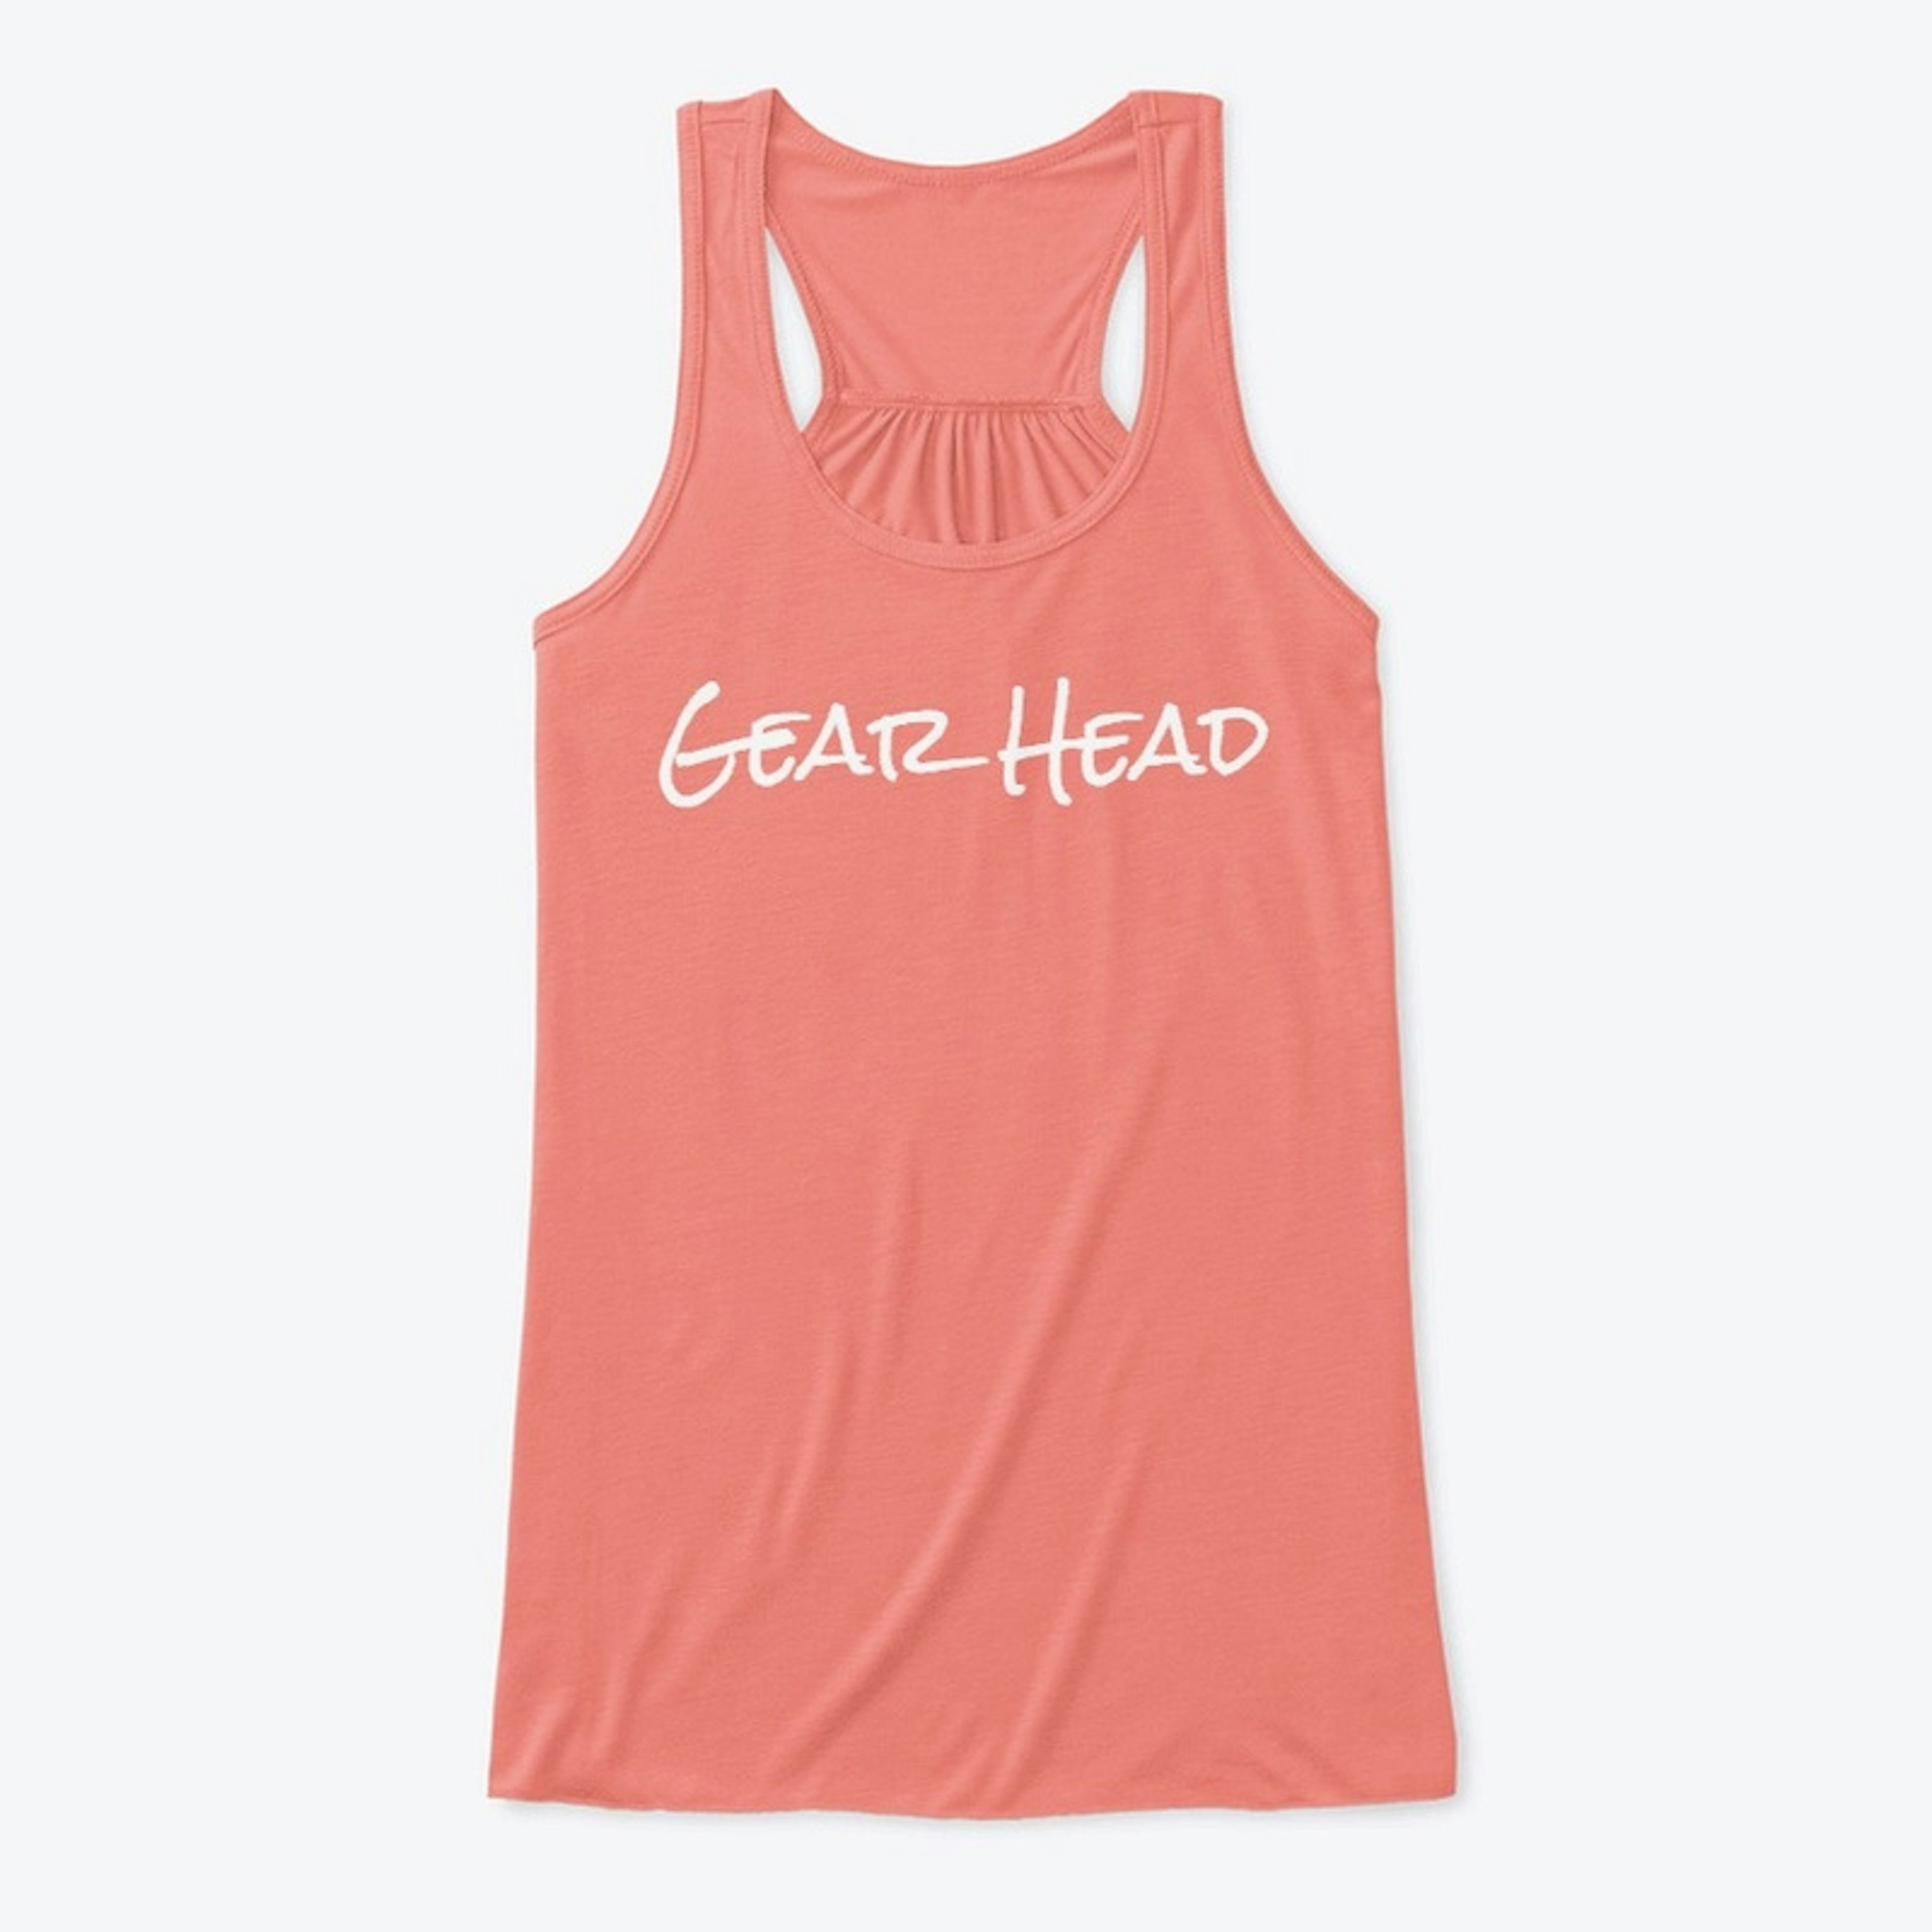 "Gear Head" Flowy Tank